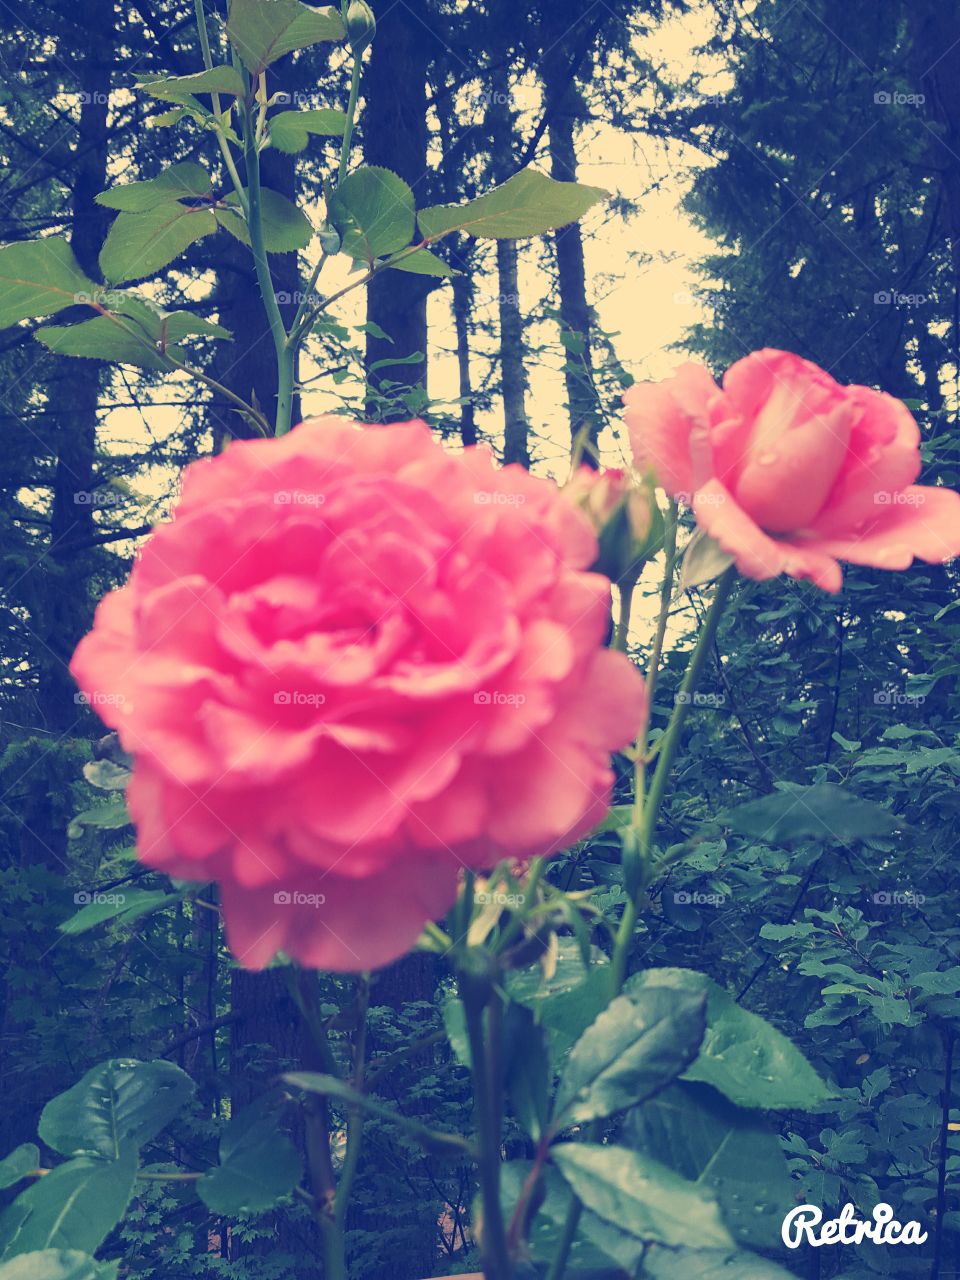 sunmer. new roses everyday